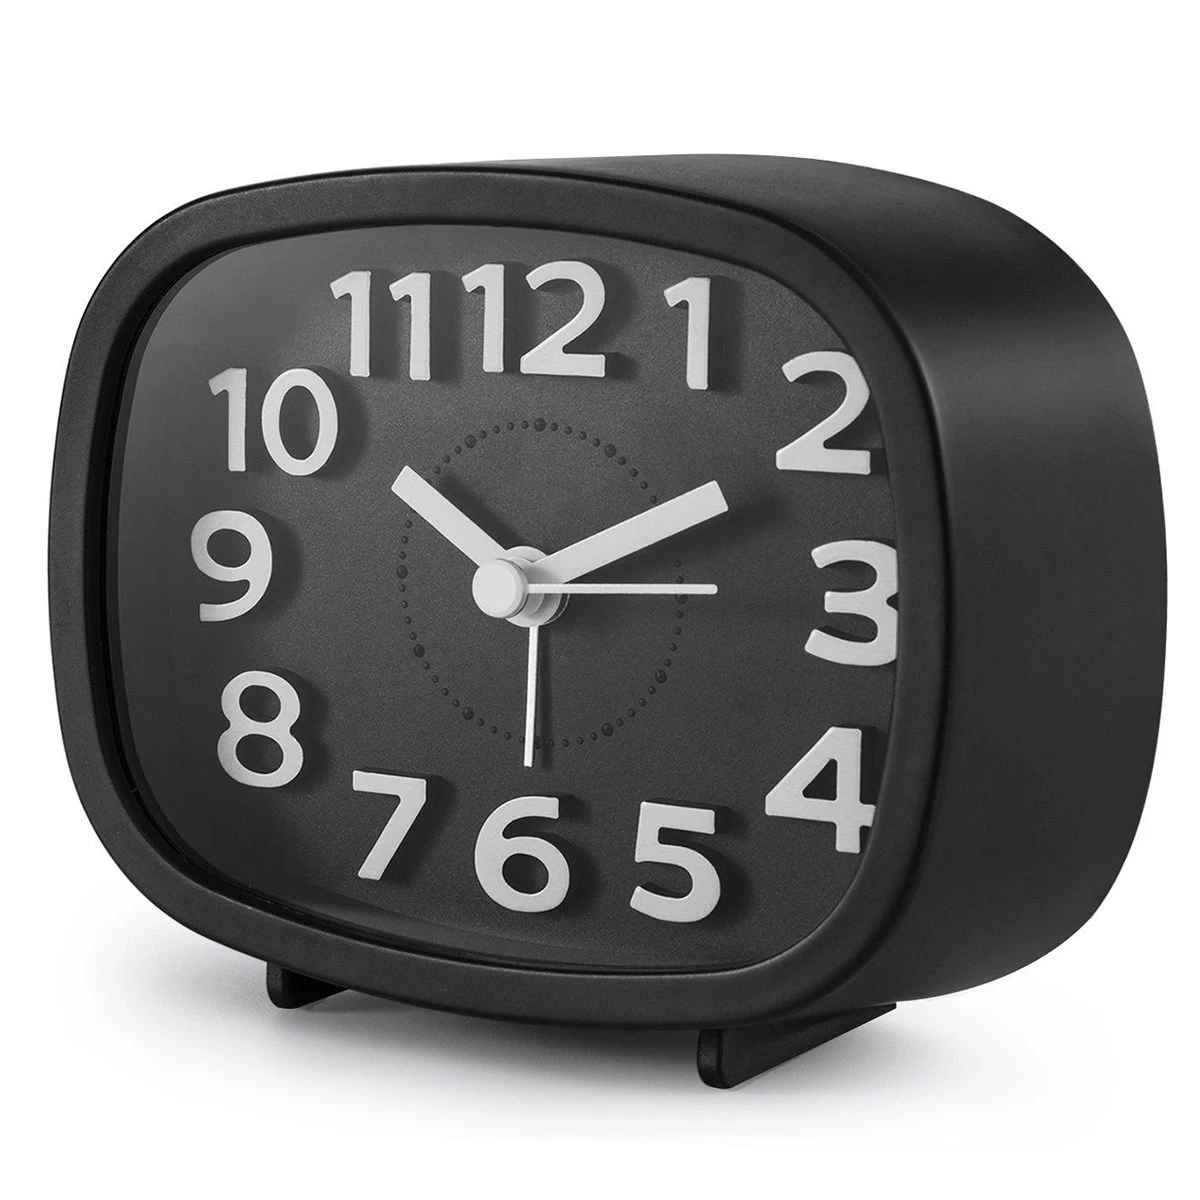 Горячая-не тикающий будильник, на батарейках прикроватные часы бесшумные Простые в установке дорожные часы с ночником